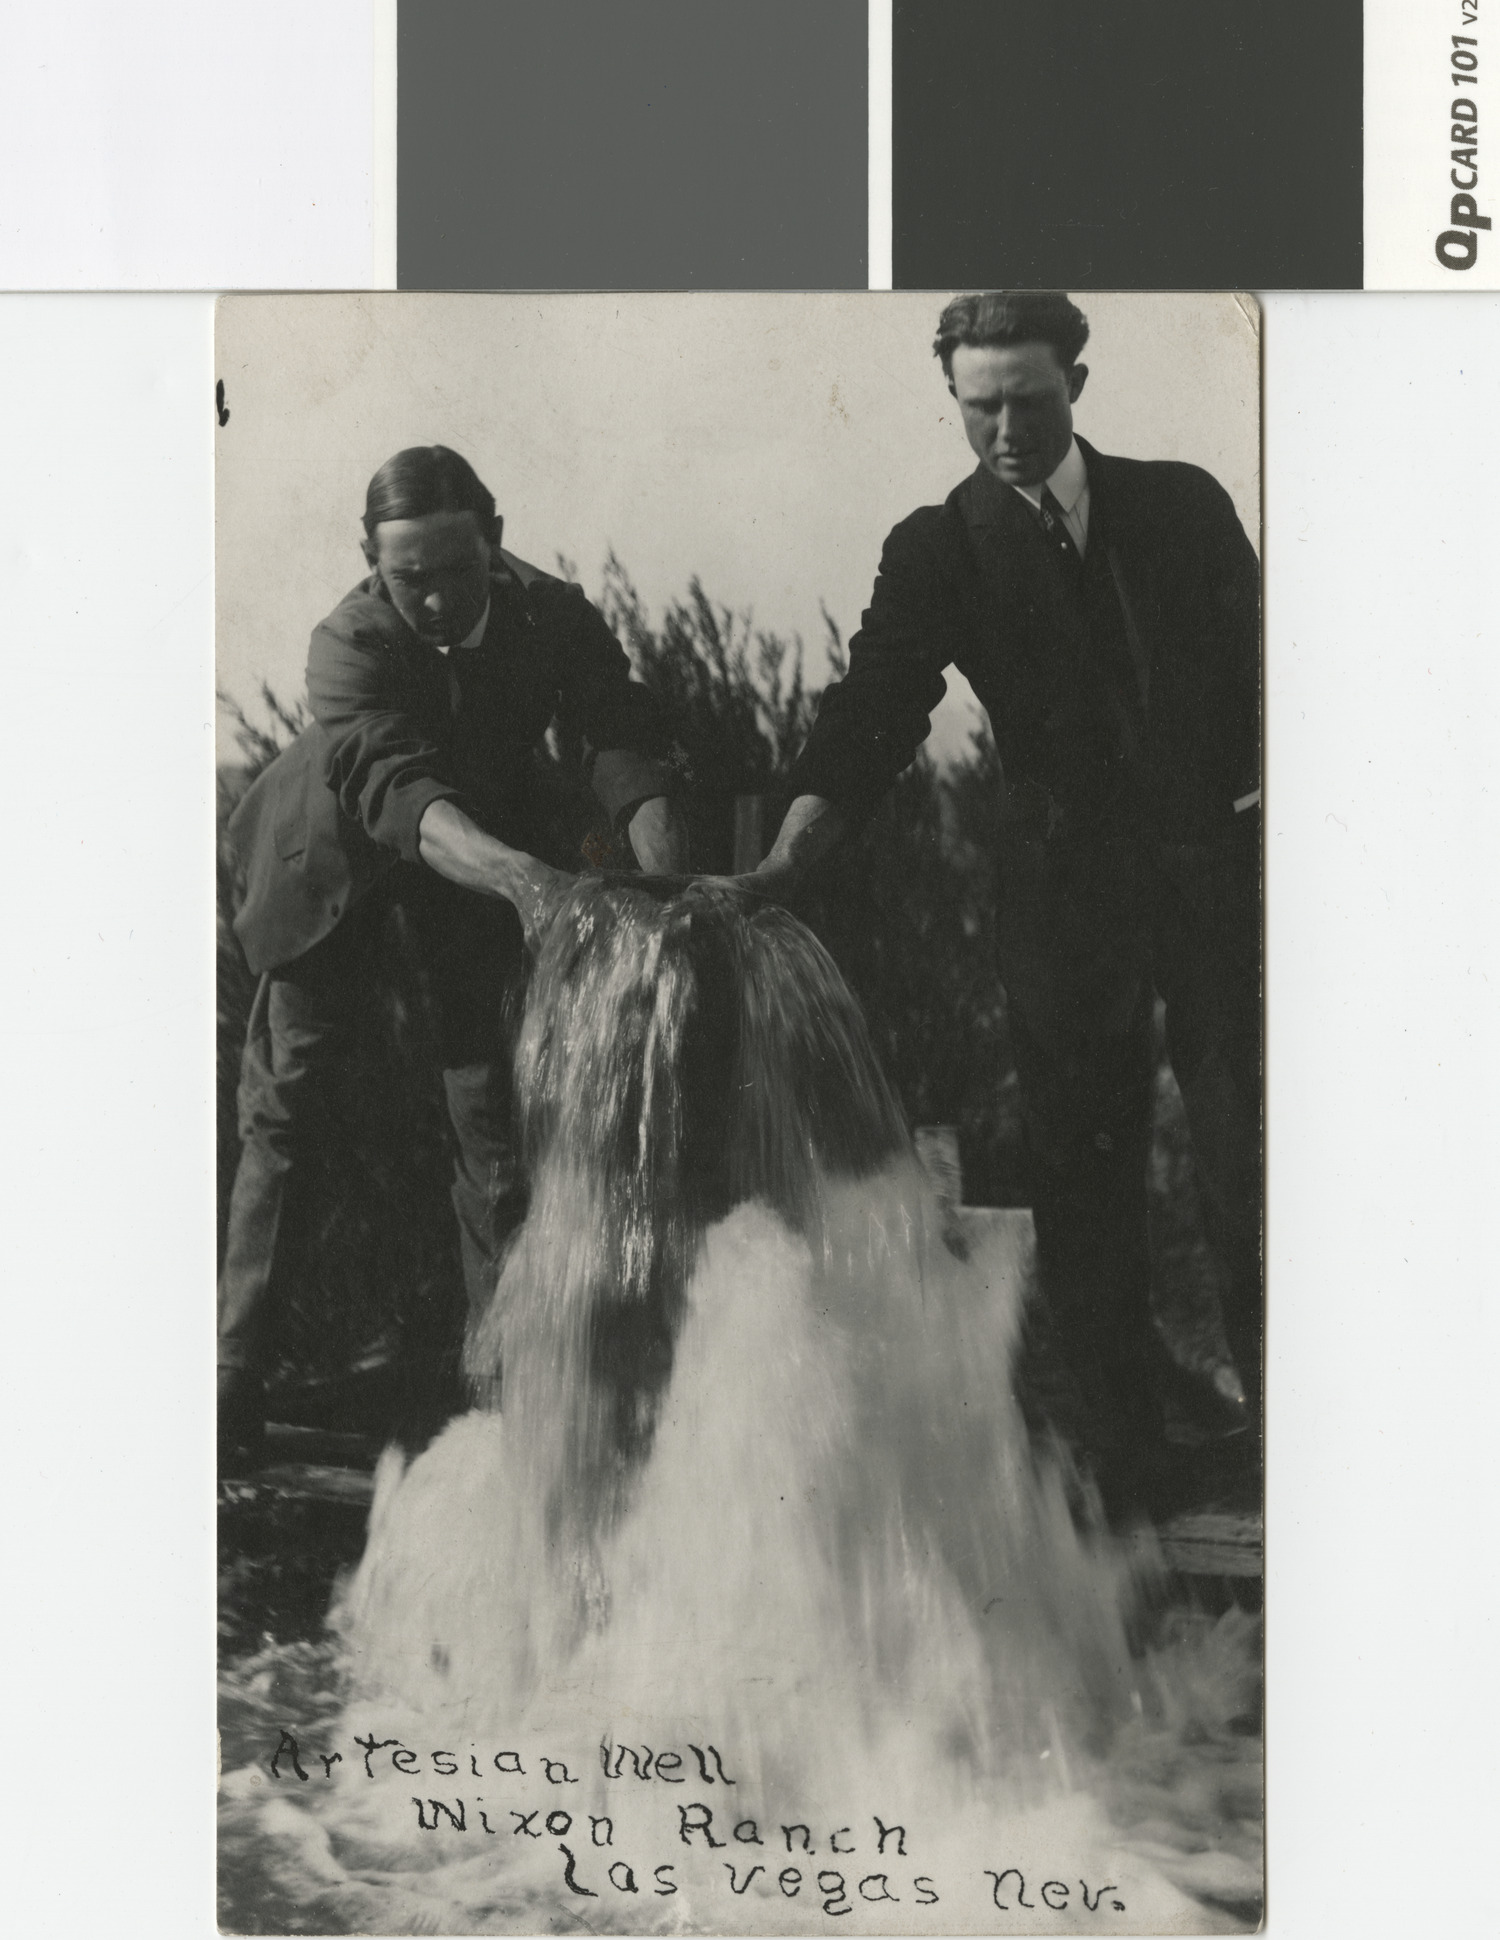 Photograph of two men at an artesian well, Wixon Ranch, Las Vegas, Nevada, circa 1920s